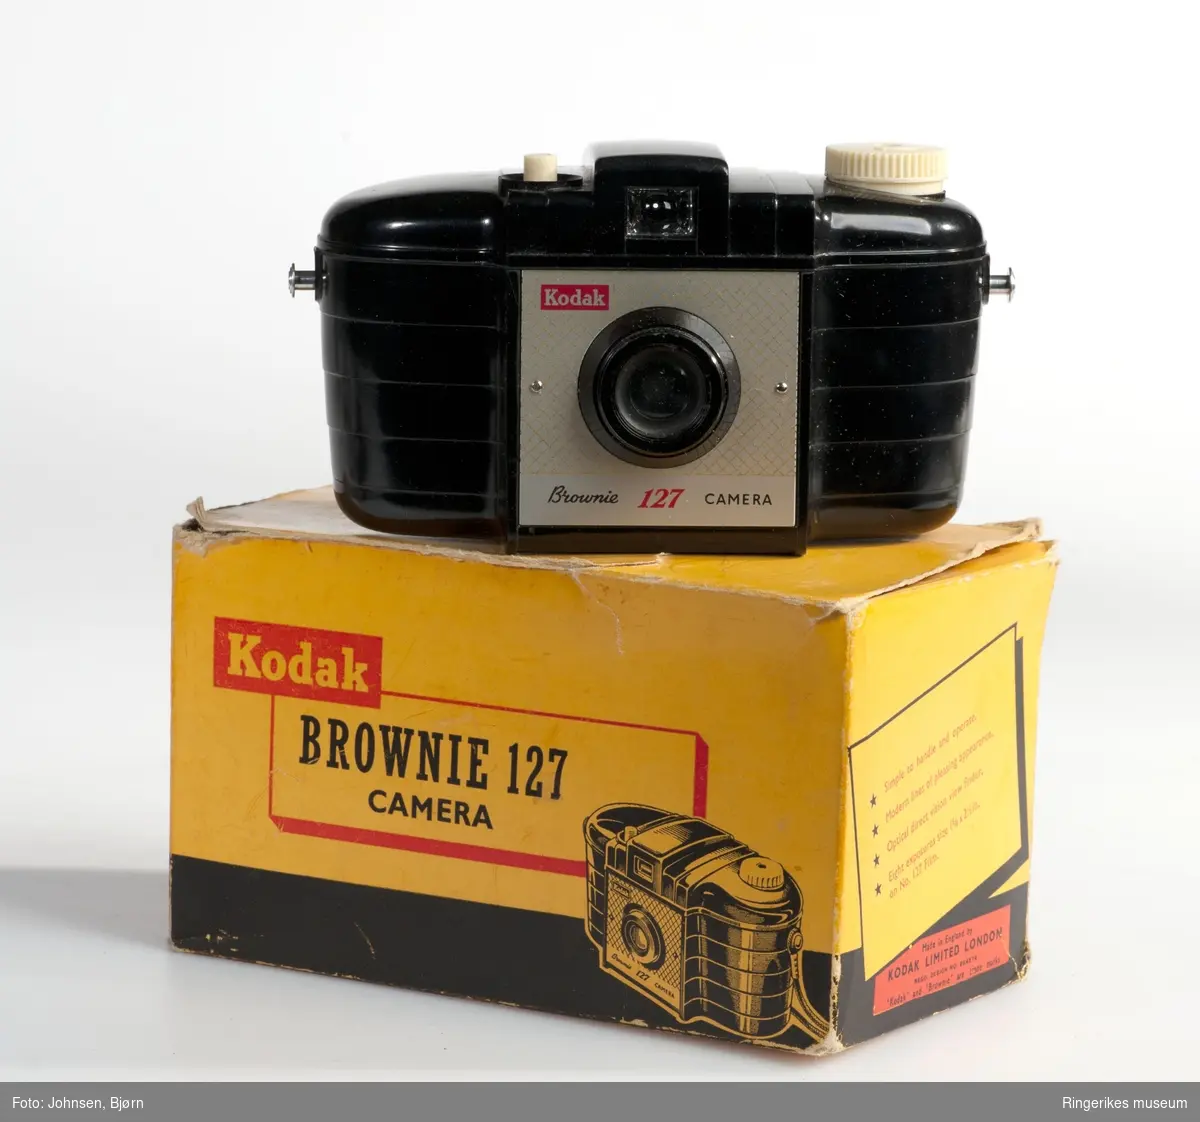 Kodak Brownie 127
Bakelitt